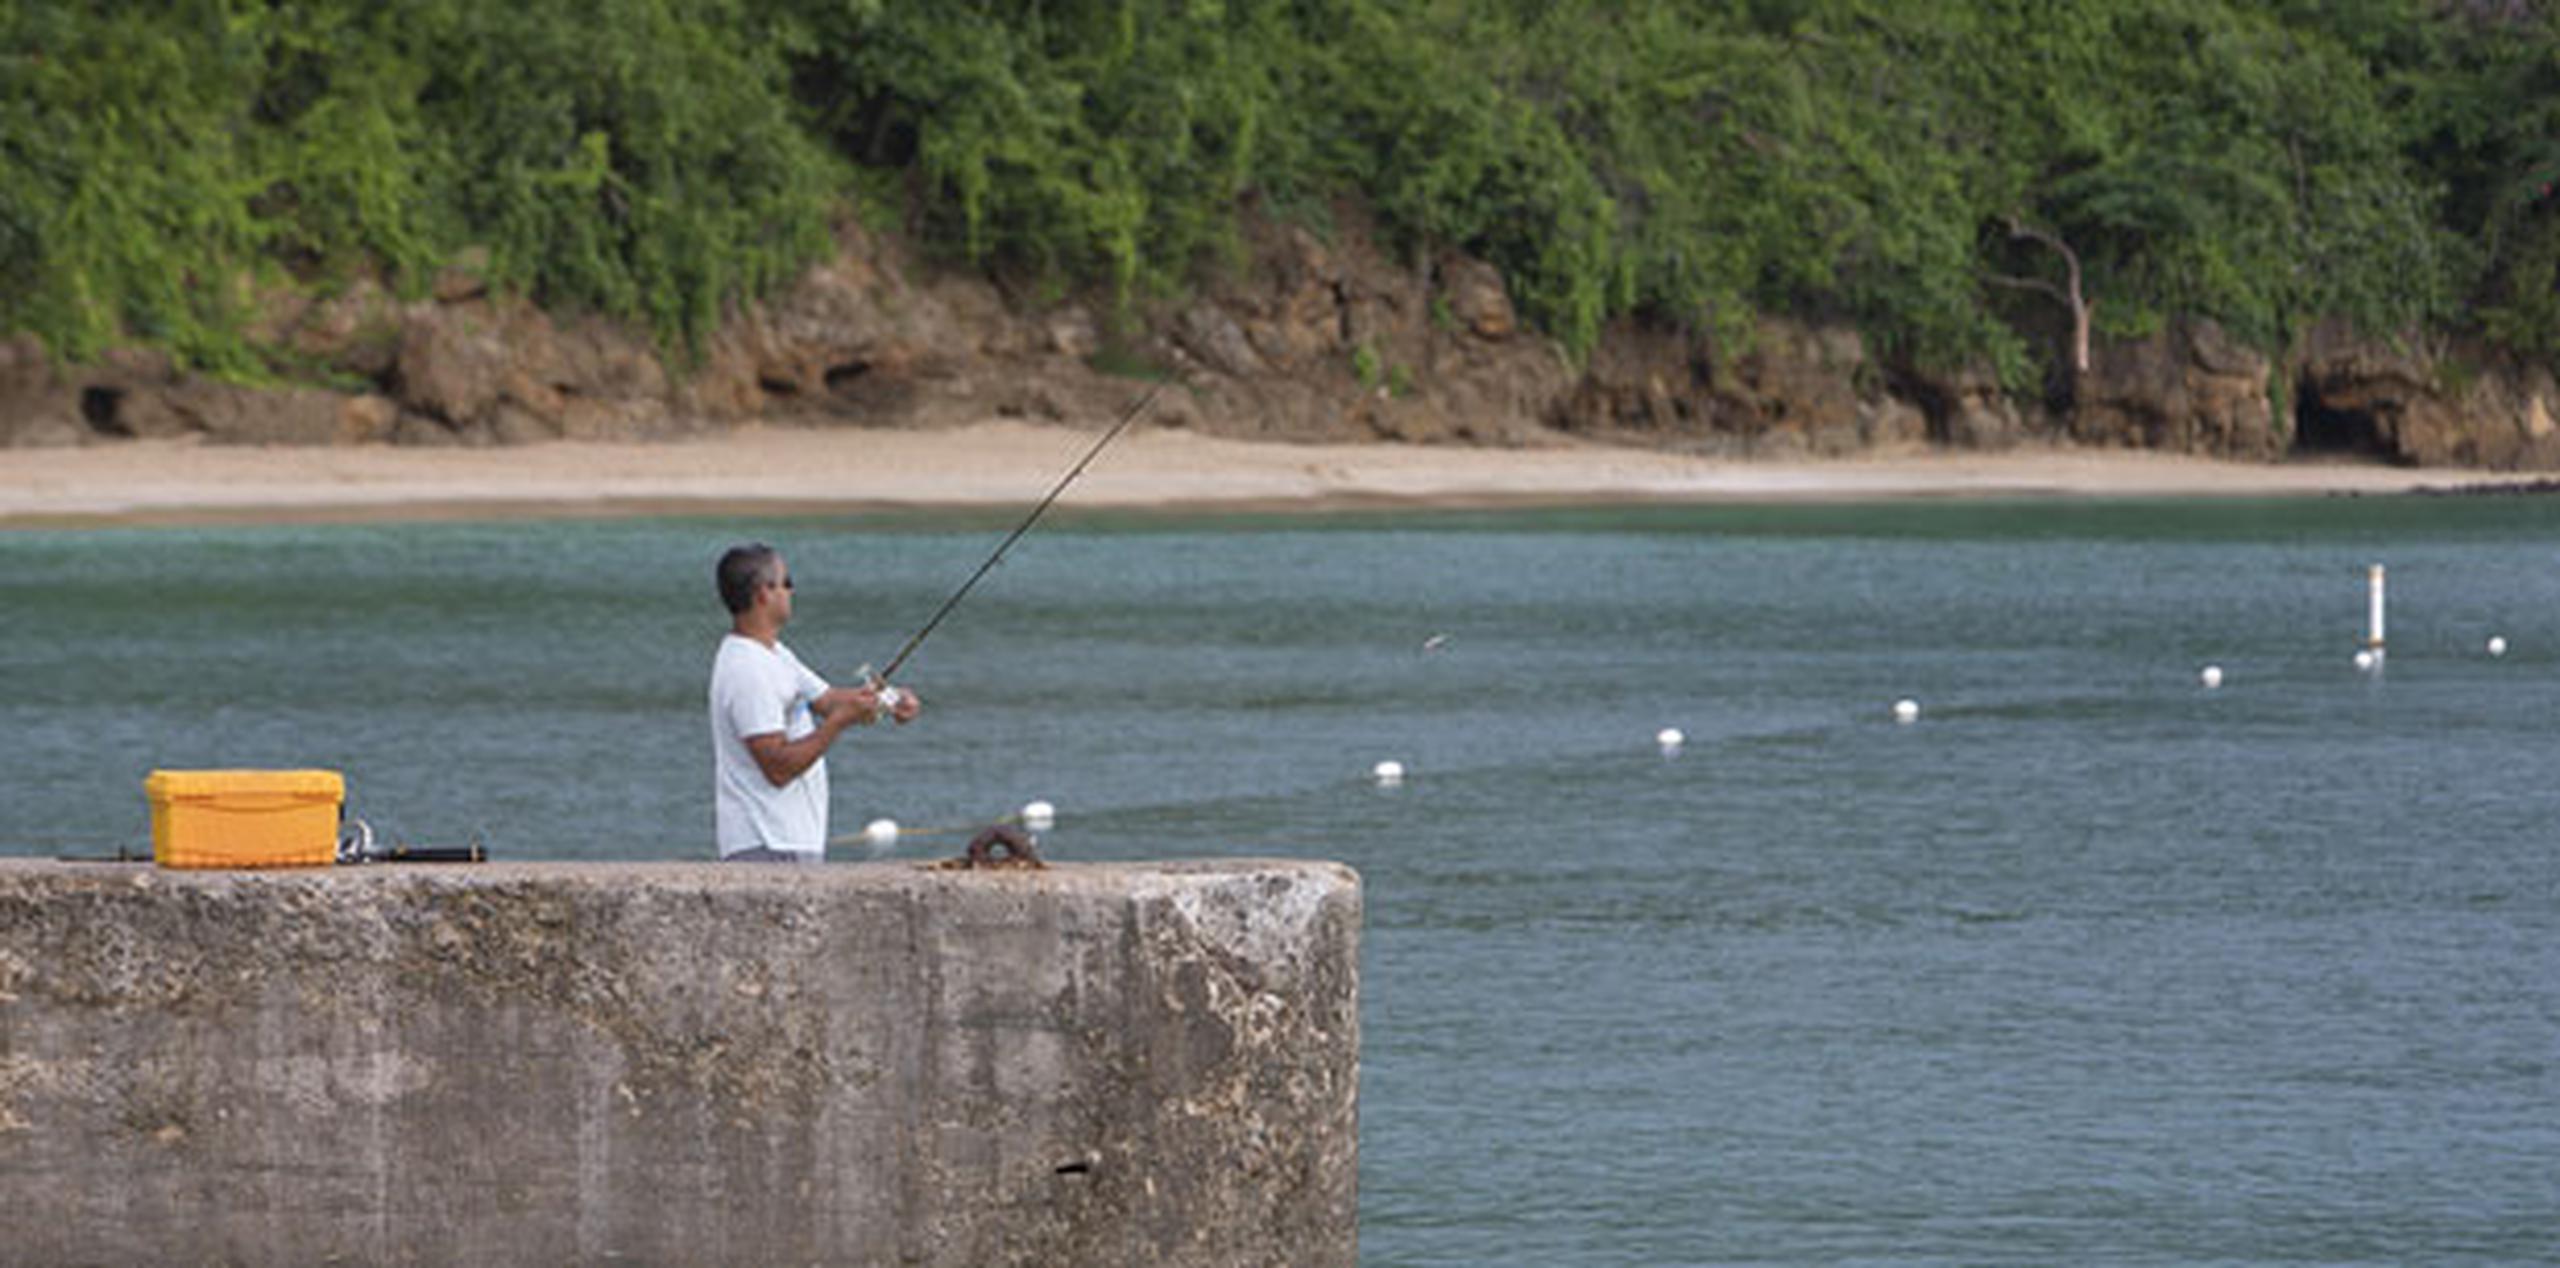 En otro muelle, Miguel Rodríguez, un vecino de Aguada, lanzaba su vara de pescar al mar, aunque sin mucho éxito.(jorge.ramirez@gfrmedia.com)